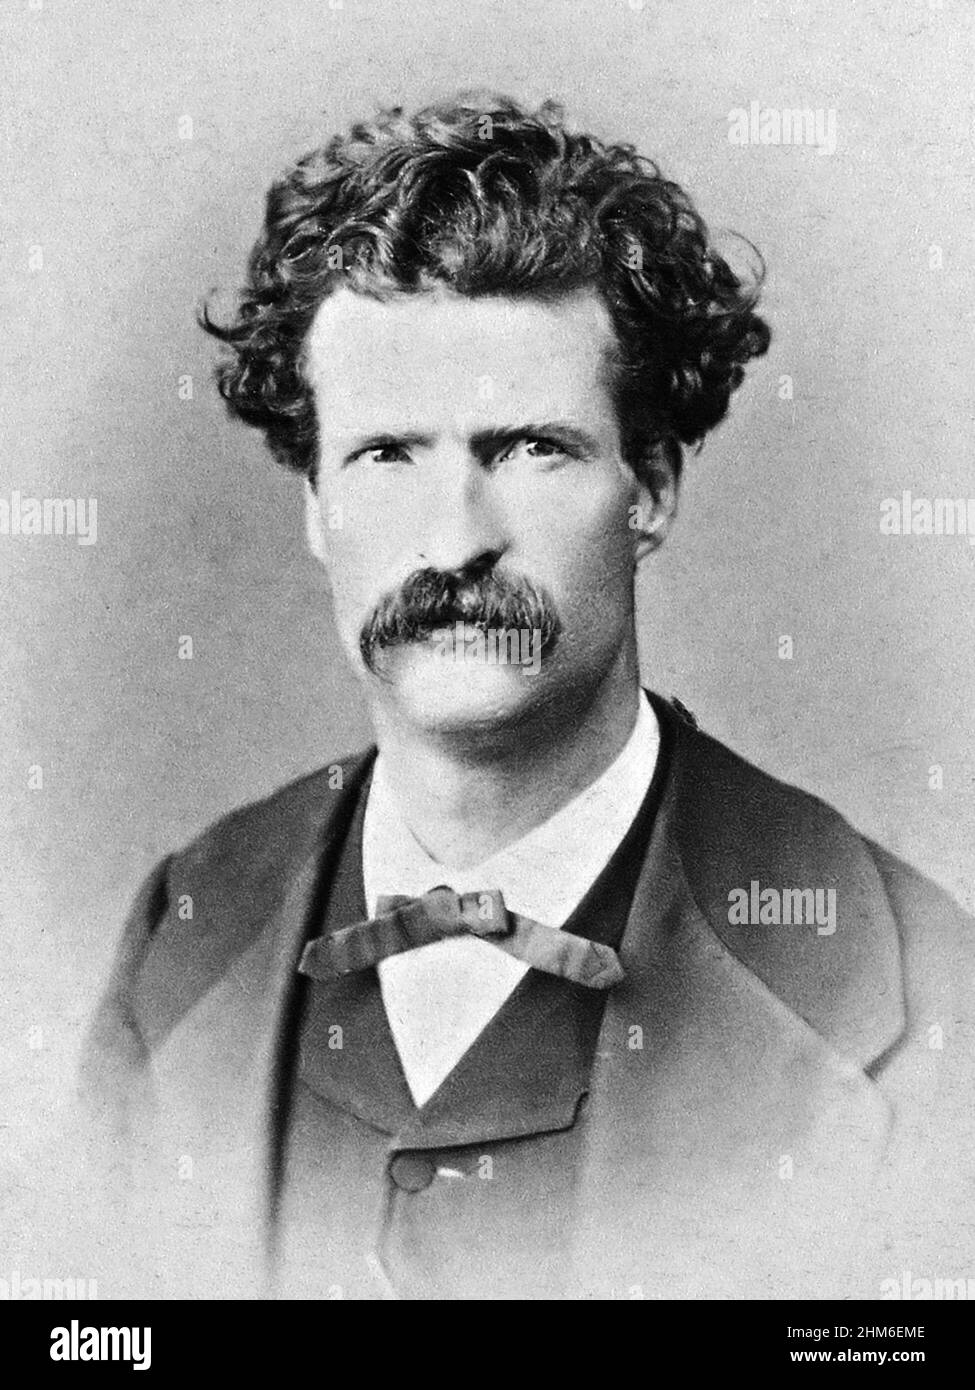 Lo scrittore americano Mark Twain (vero nome Samuel Clemens), autore di Tom Sawyer e Huckleberry Finn. Foto del 1867 quando l'autore era 32. Foto Stock